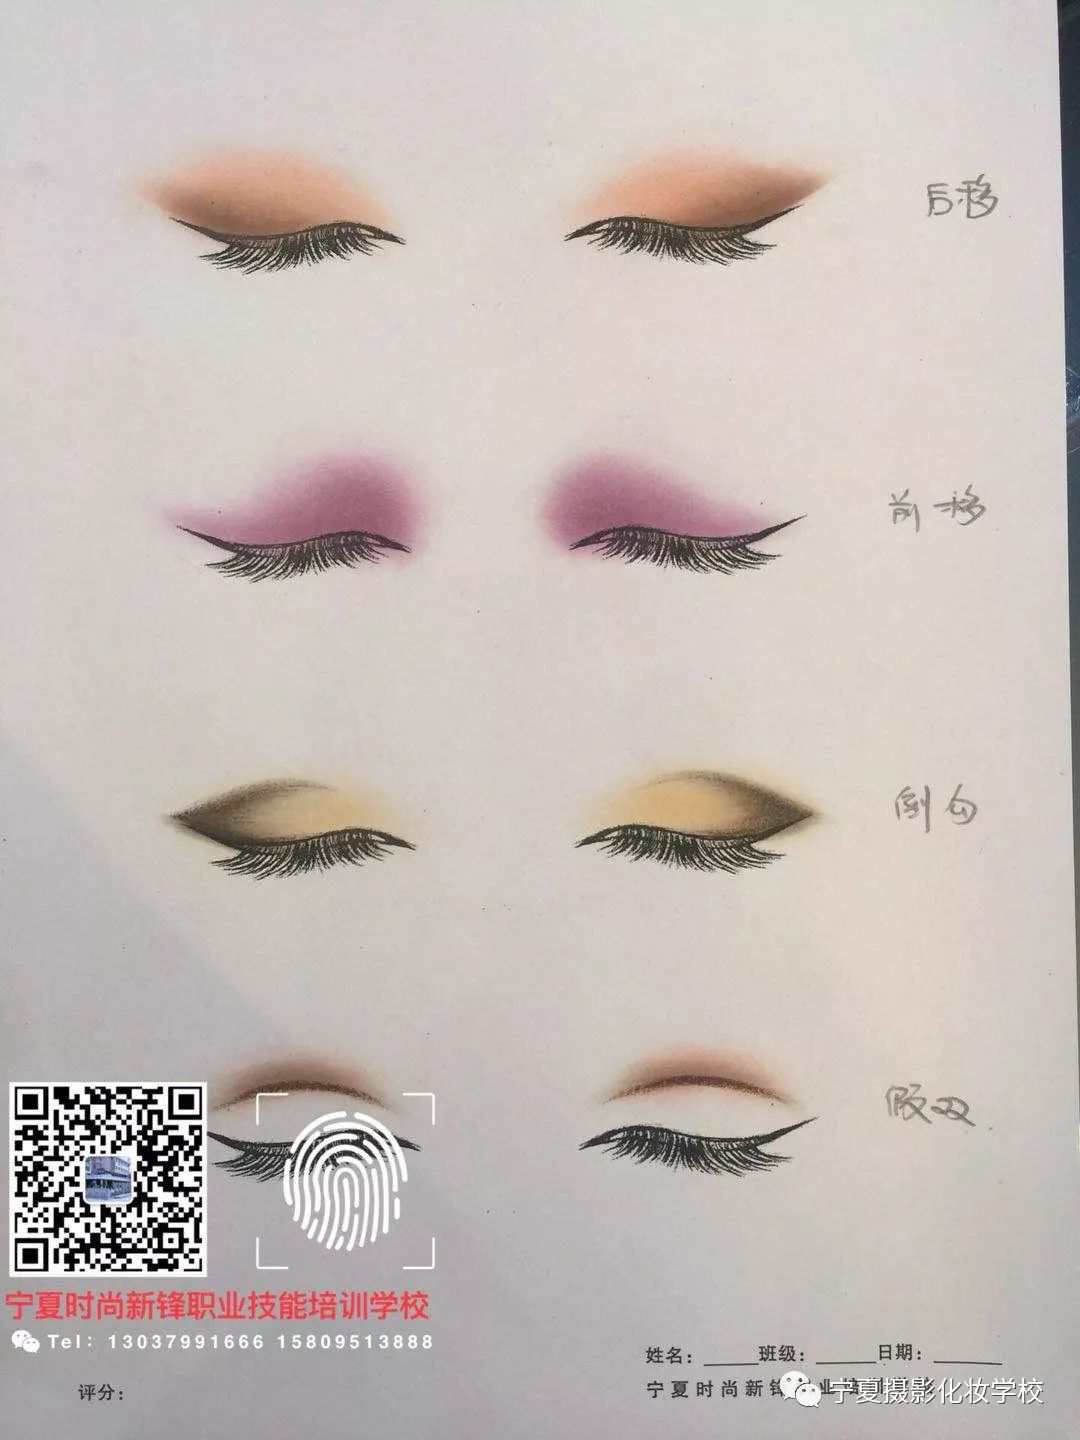 2019年化妆造型师素描课程特惠招生价1680元